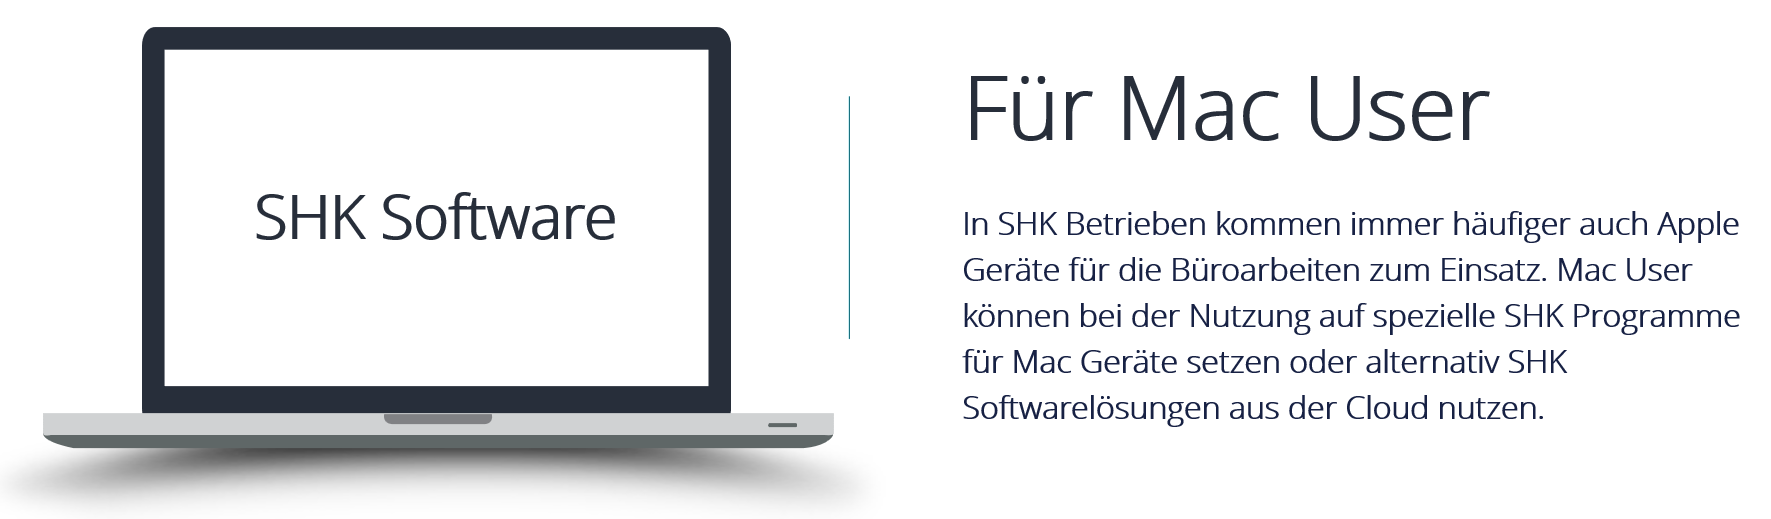 Beitragsbild - SHK Software für Mac User